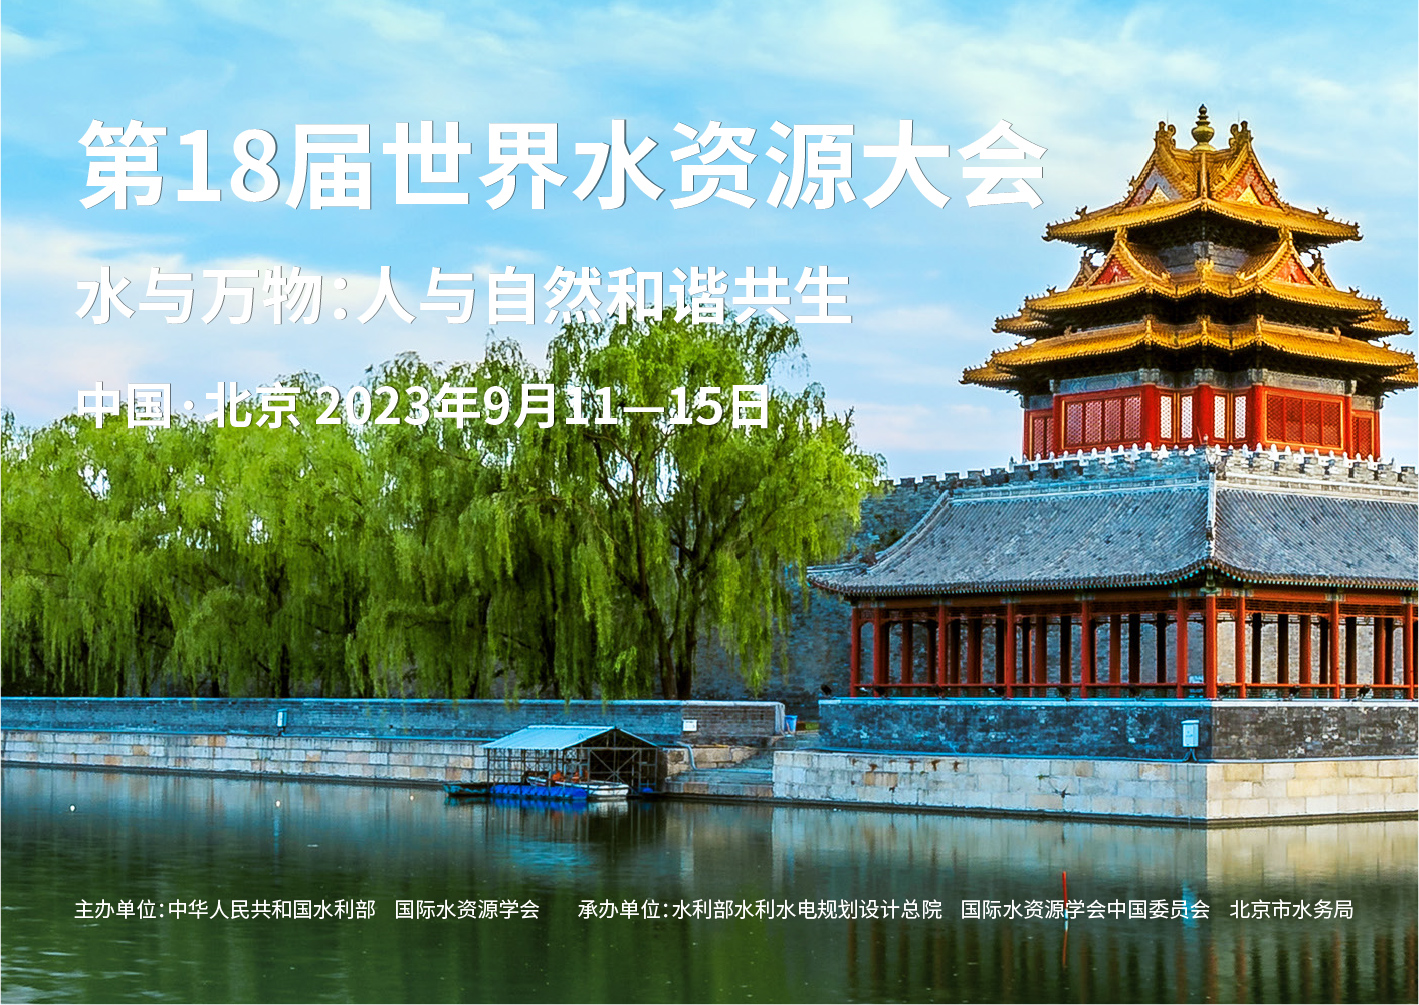 2020第五届郑州国际水展暨城镇水务给排水与水处理博览会_污水宝活动汇